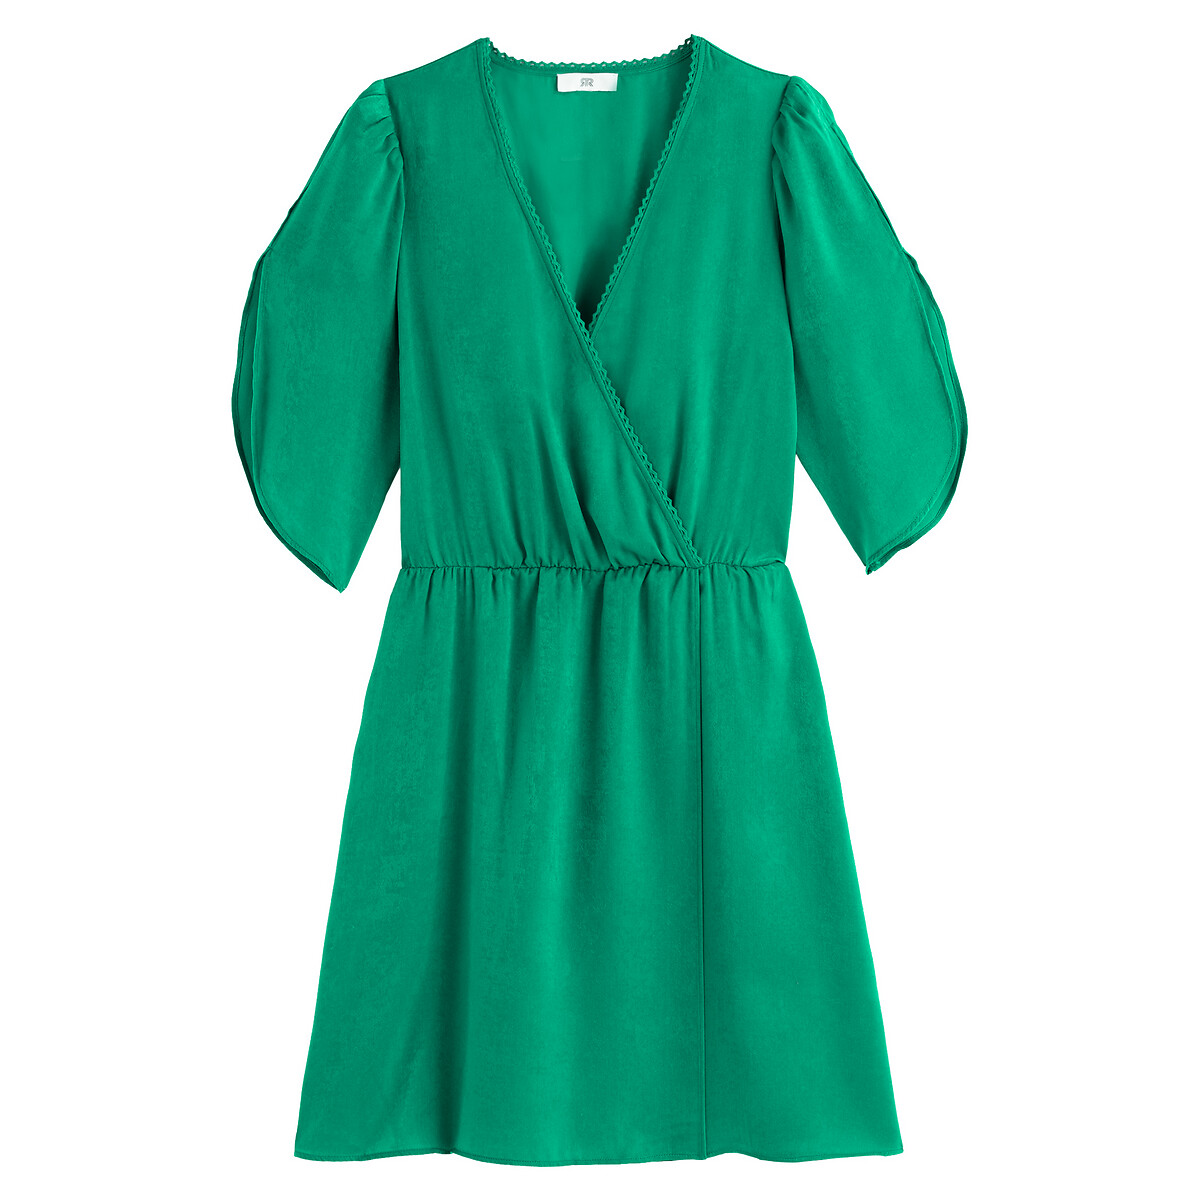 Платье LaRedoute Короткое с запахом короткие рукава 38 (FR) - 44 (RUS) зеленый, размер 38 (FR) - 44 (RUS) Короткое с запахом короткие рукава 38 (FR) - 44 (RUS) зеленый - фото 5